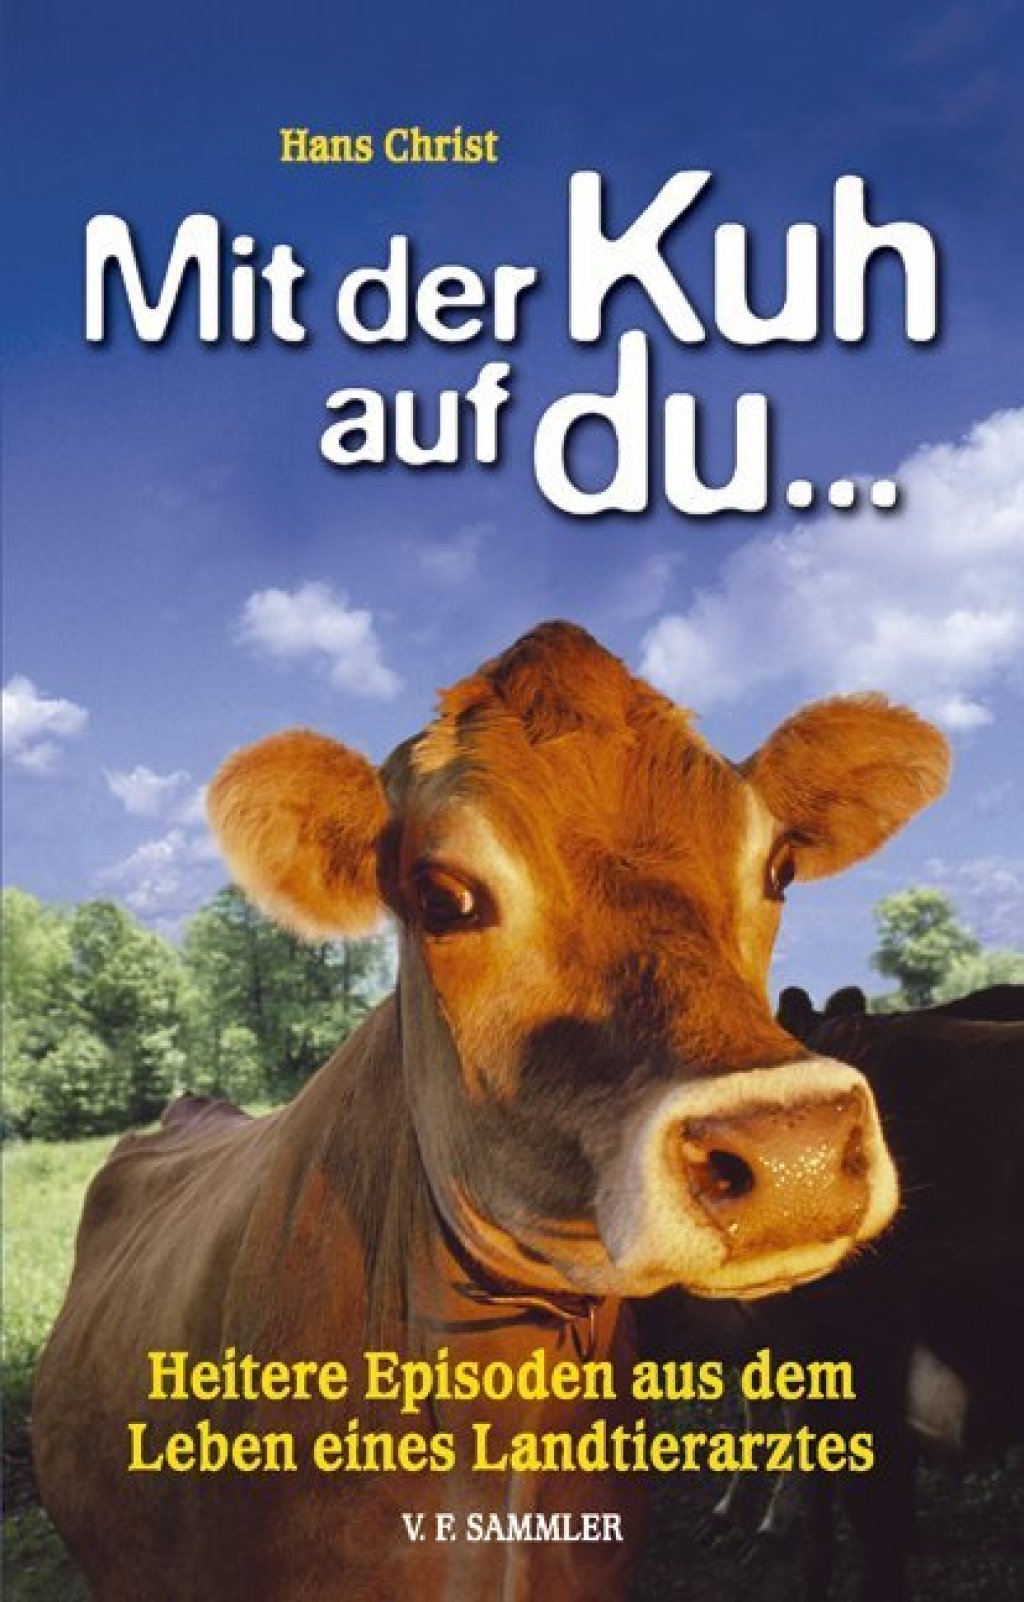 Mit der Kuh auf du - Heitere Episoden aus dem Leben eines Landtierarztes Bd.01